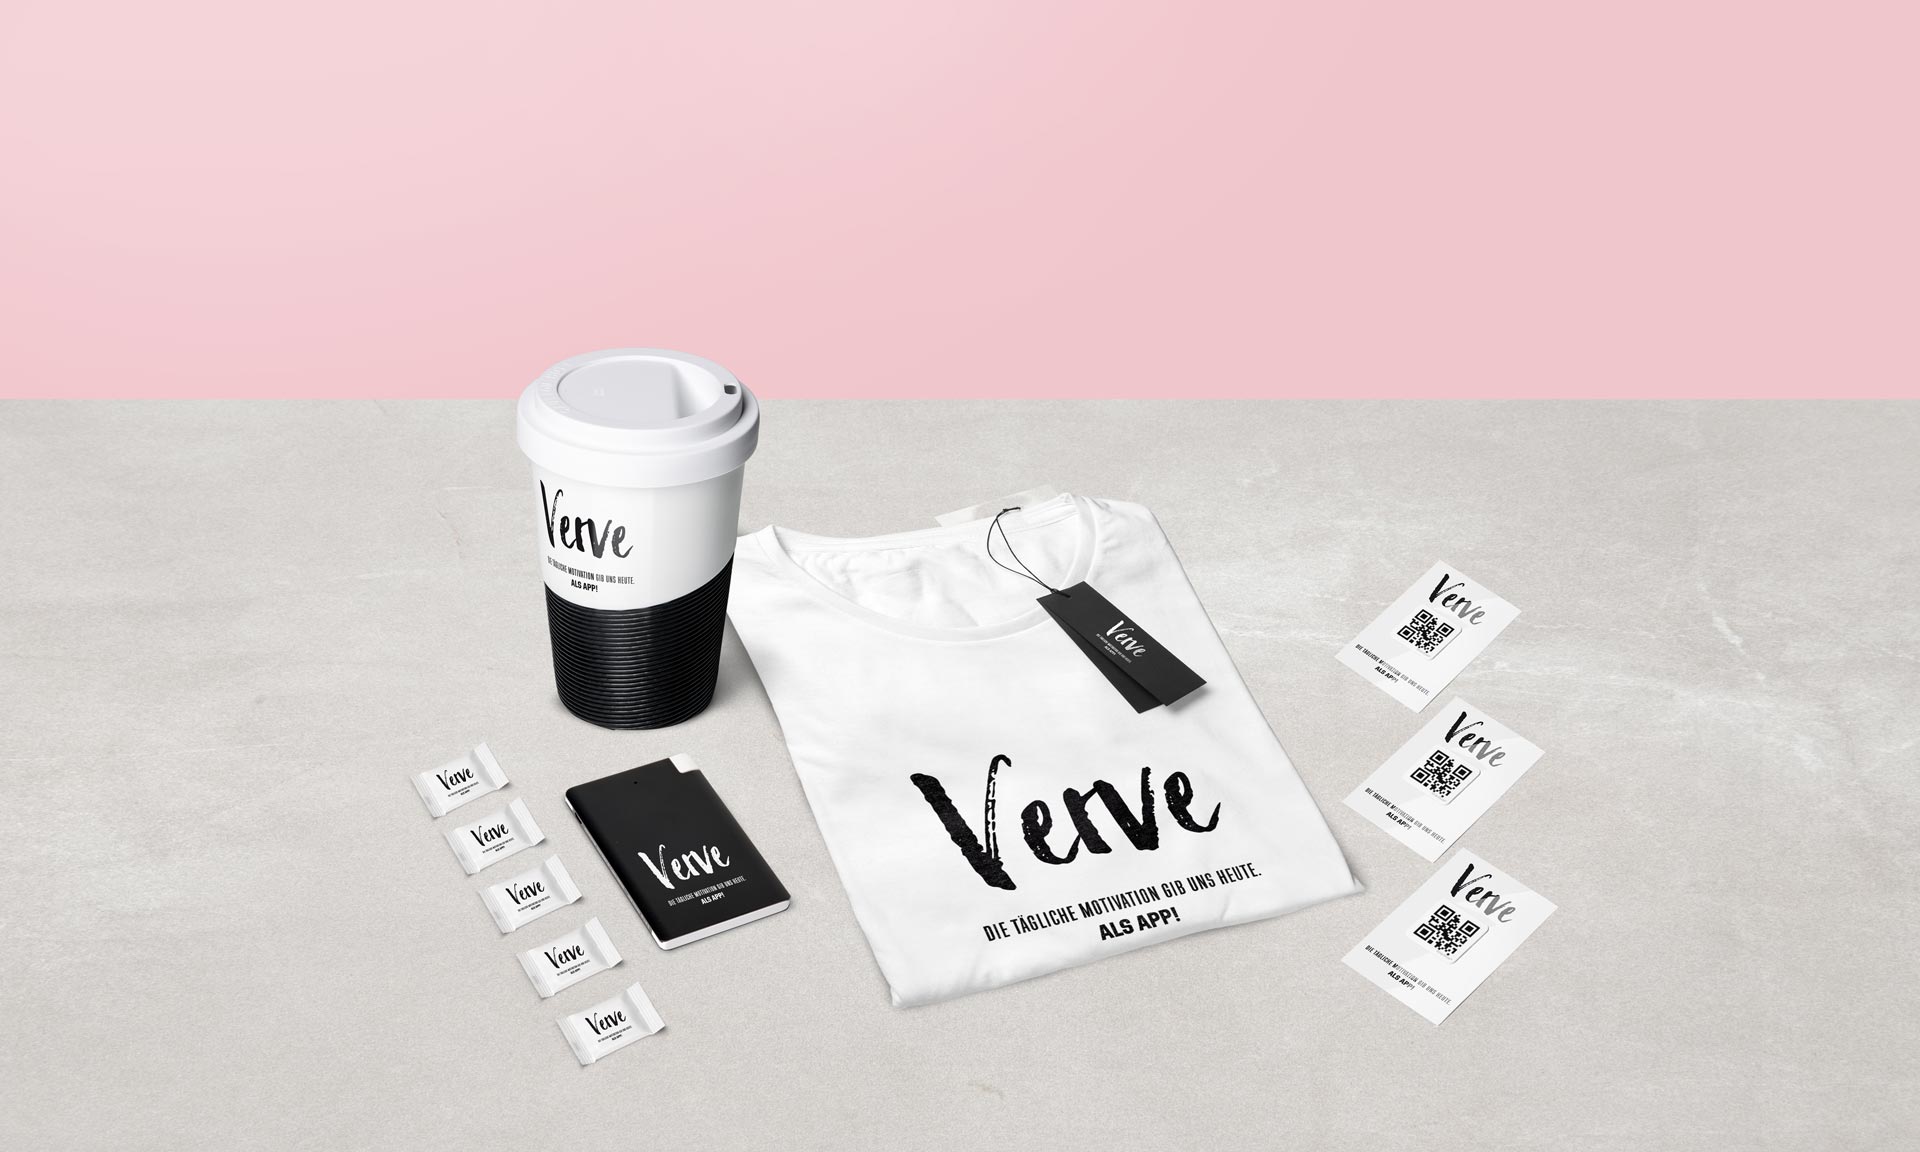 Werbeartikel Referenz Kicks Promotion Verve Coffee2Go Becher T-Shirt